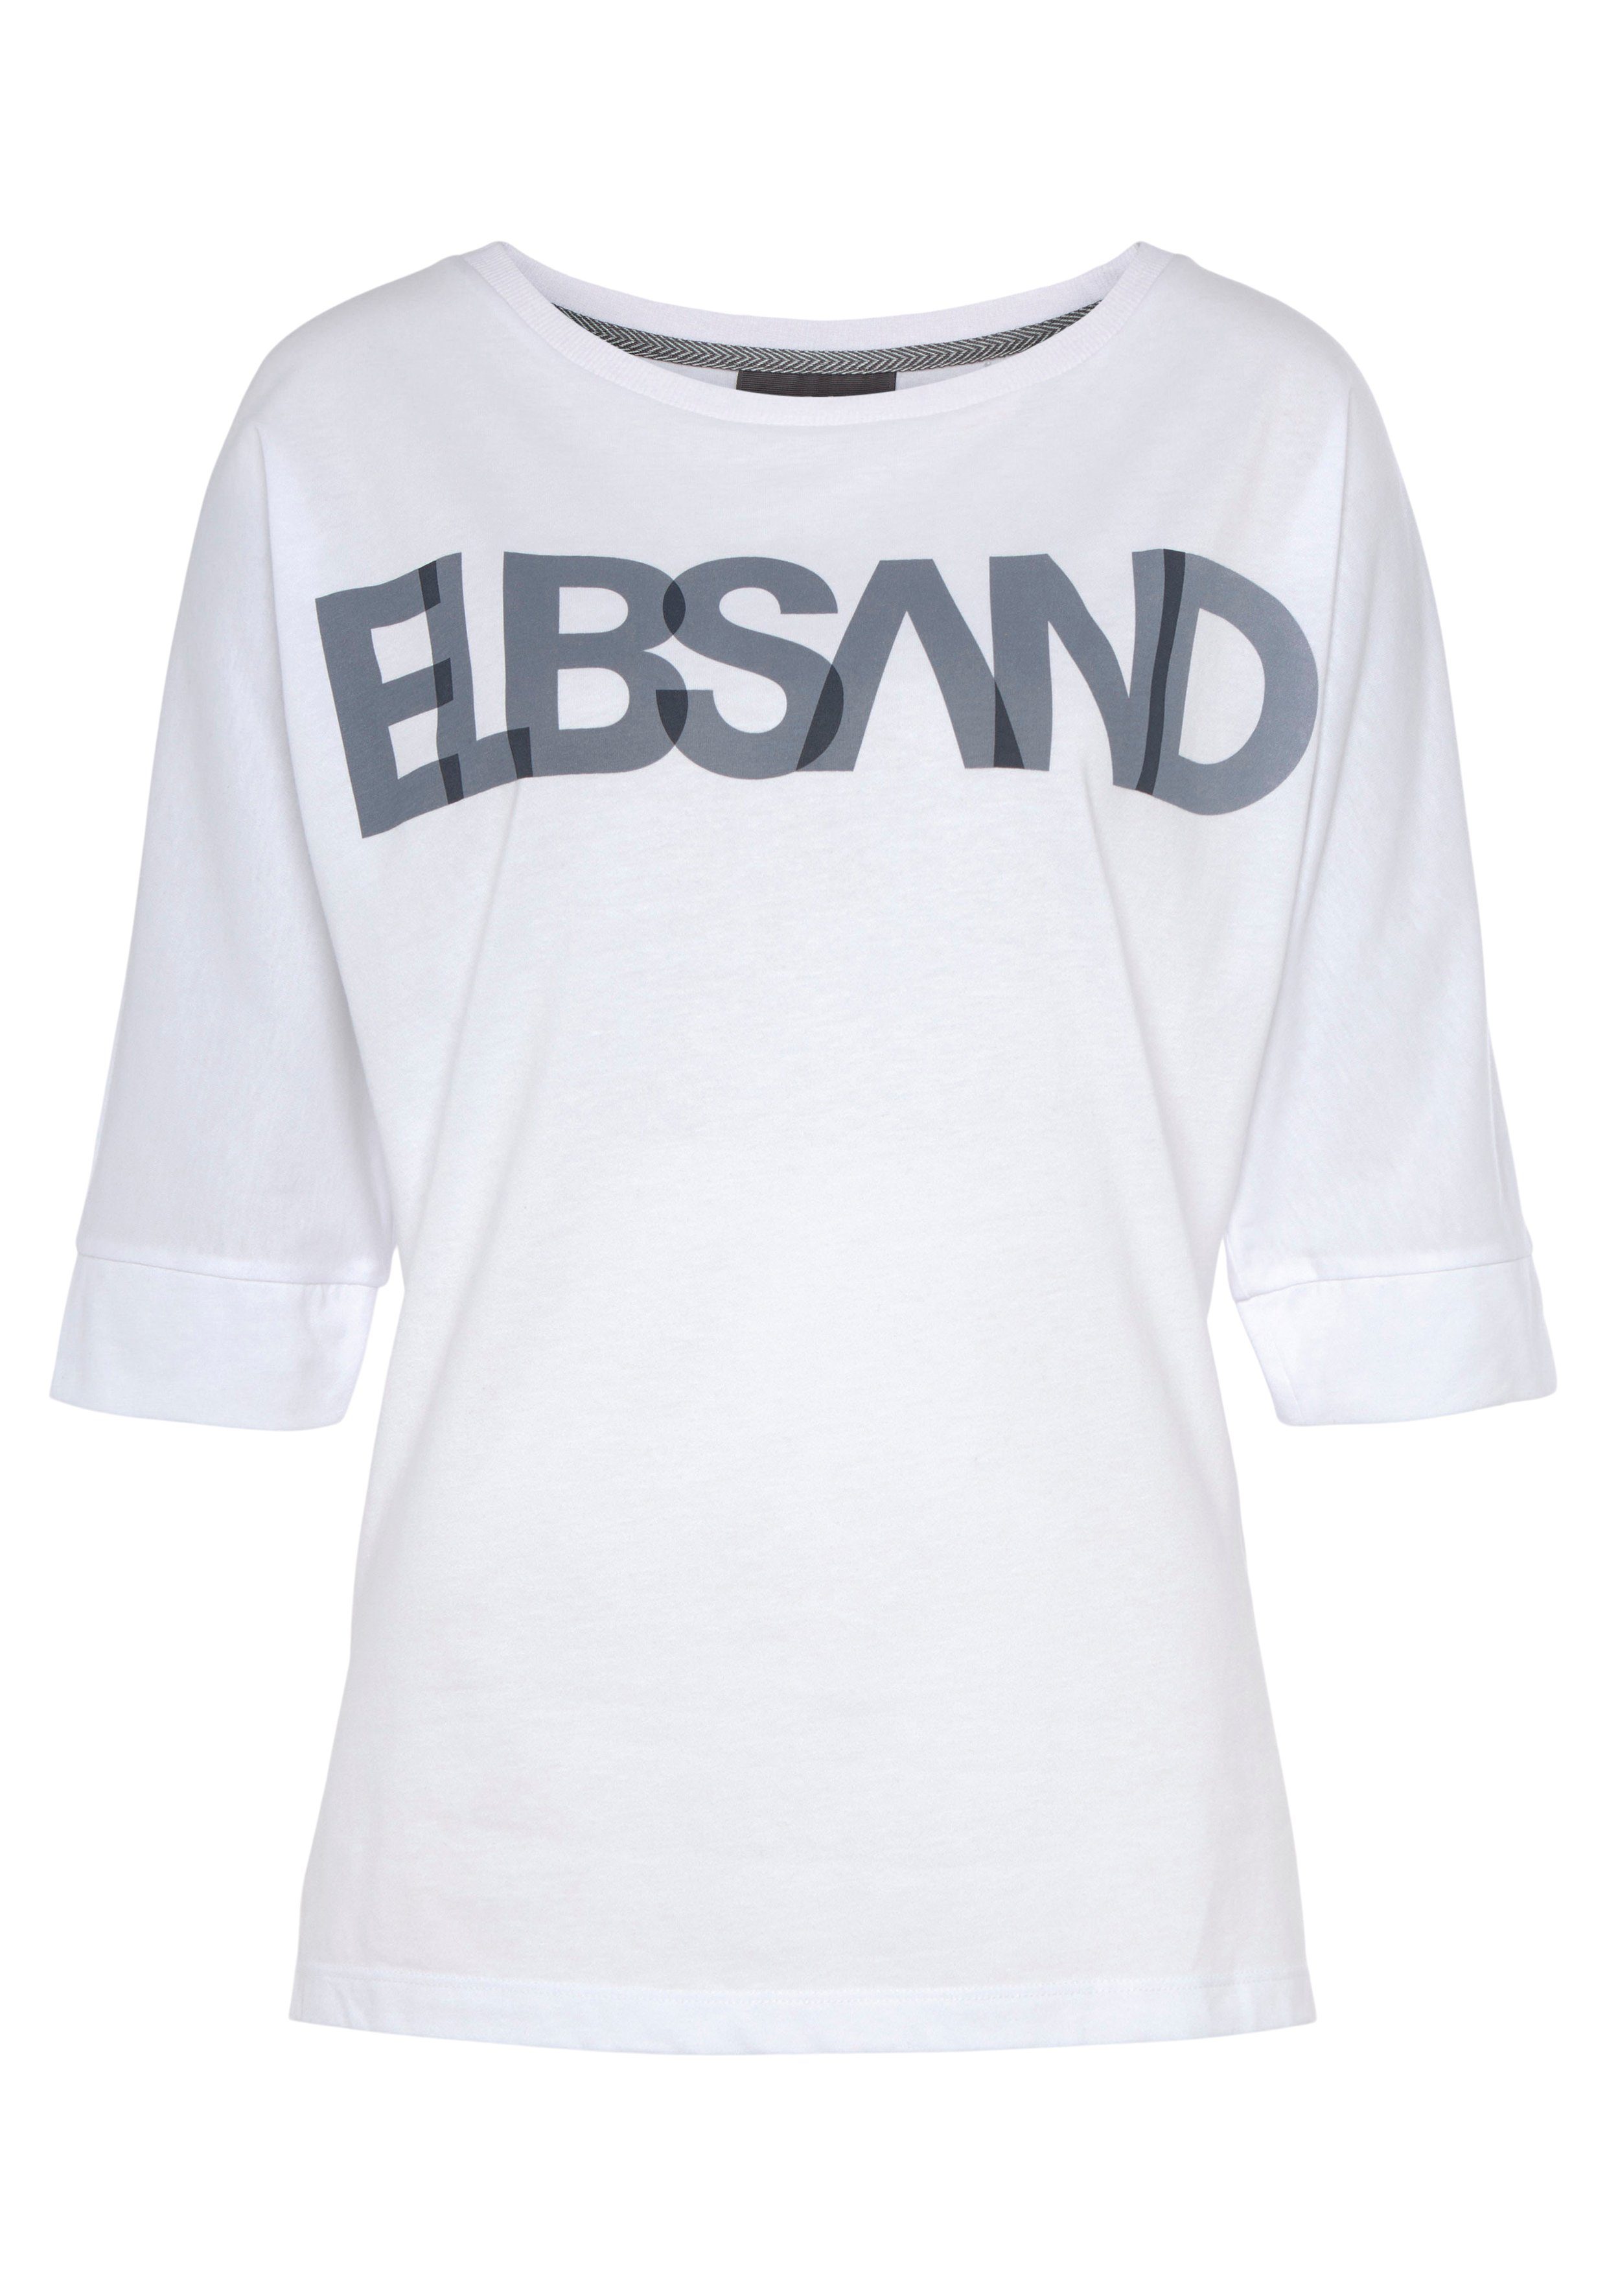 Elbsand 3/4-Arm-Shirt mit Logodruck, lockere Passform Baumwoll-Mix